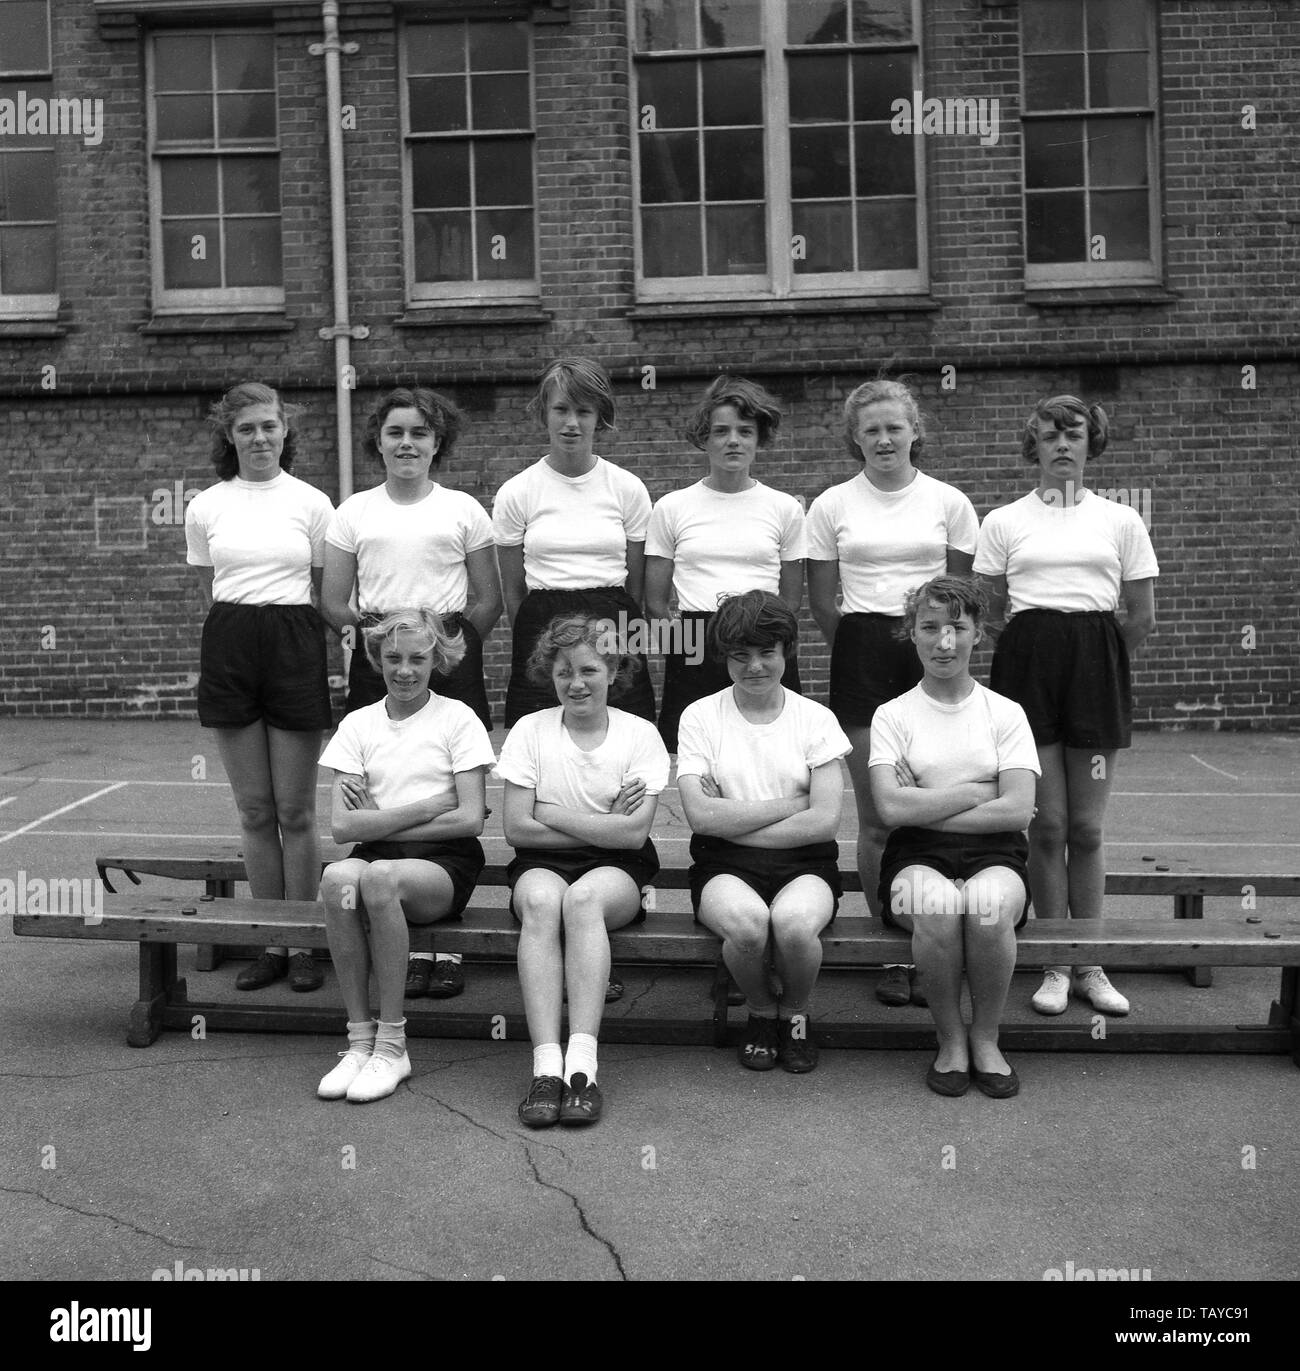 1950, historische, Teenager Sekundärschoolgirls für ein Bild in der PE-kit Posing - einfache weiße T-Shirt, schwarze Shorts und tragen plimsols, außerhalb ihrer innerstädtischen Schulgebäude, England, UK. Stockfoto